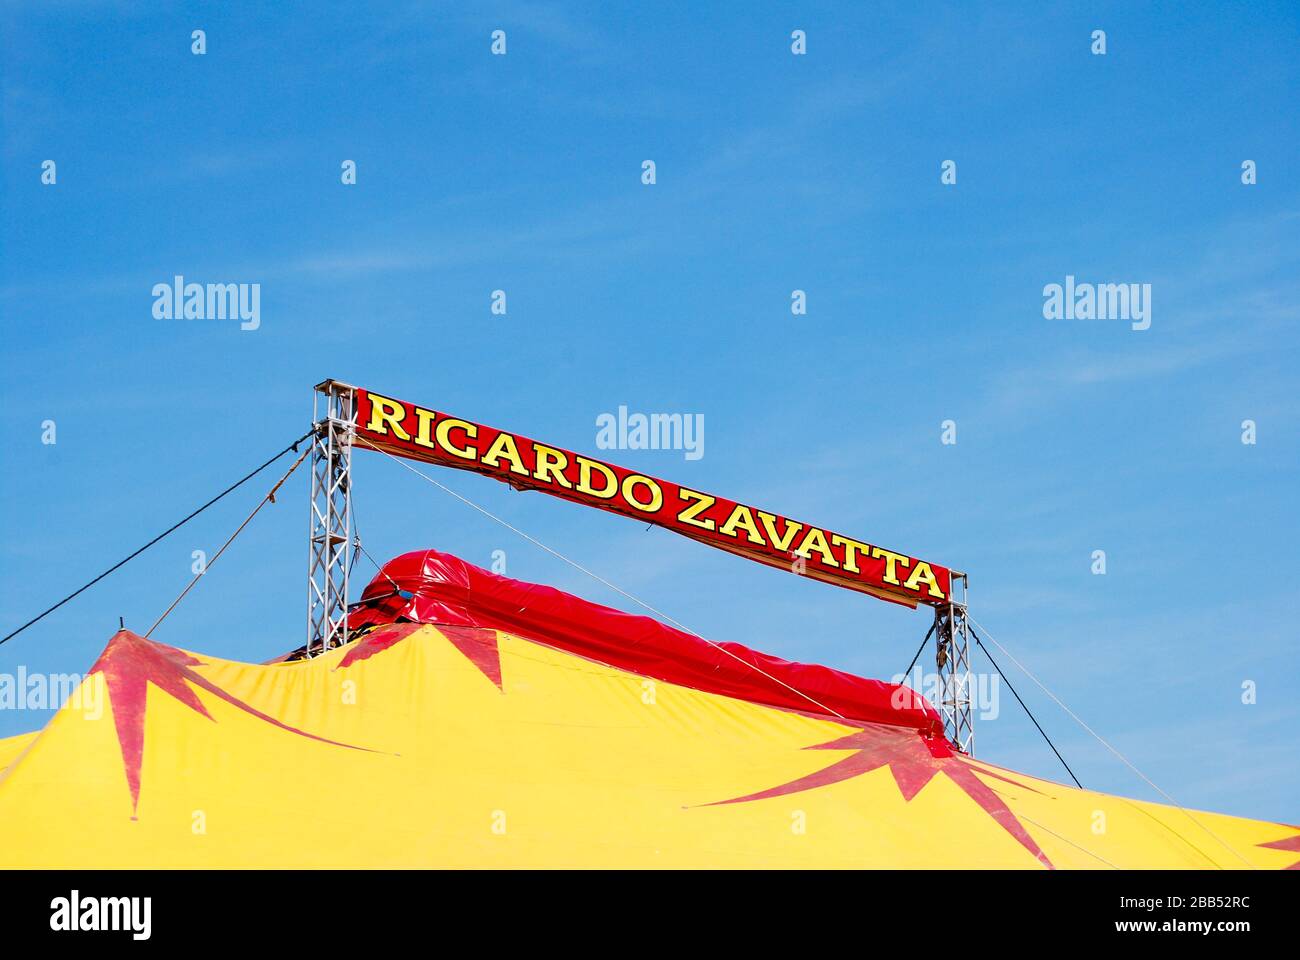 Martigues, France : Ricardo zavatta circus Stock Photo